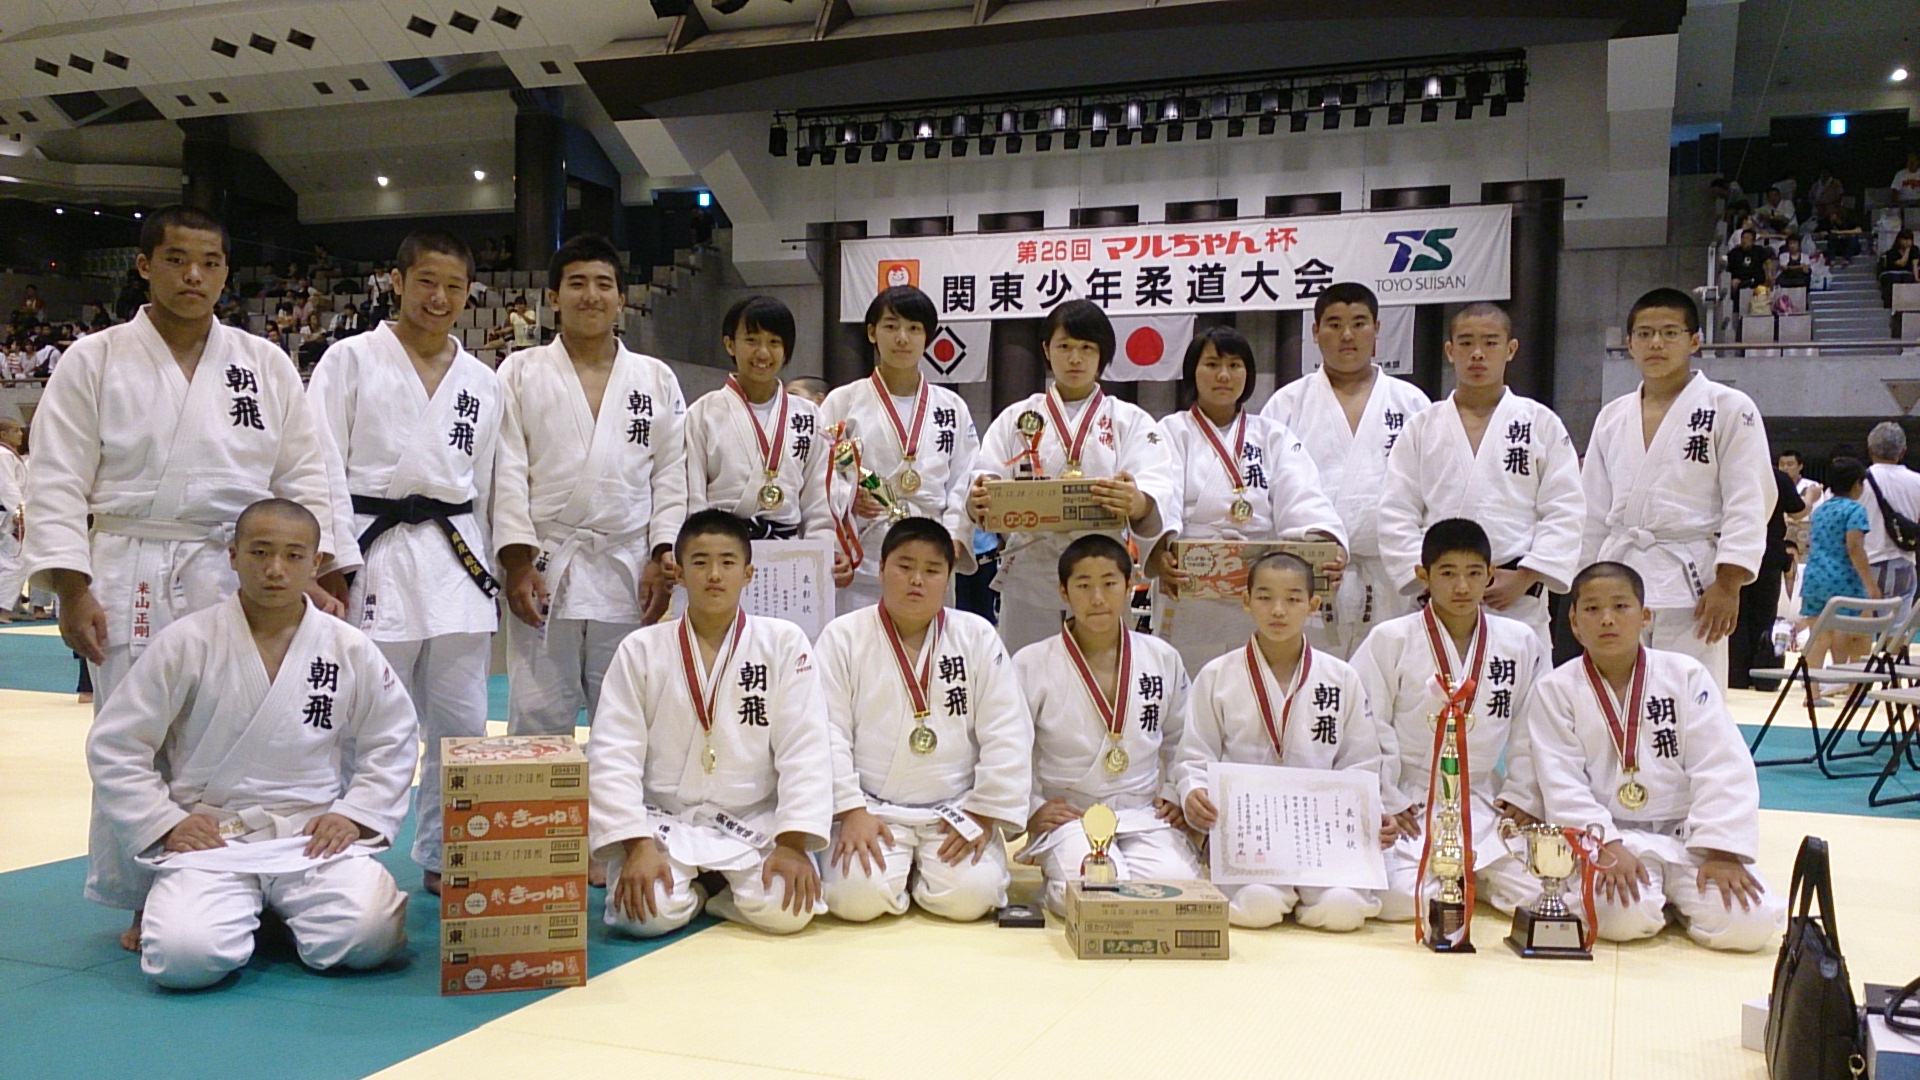 結果報告 第２６回マルちゃん杯 関東少年柔道大会 朝飛道場 Asahi Dojo